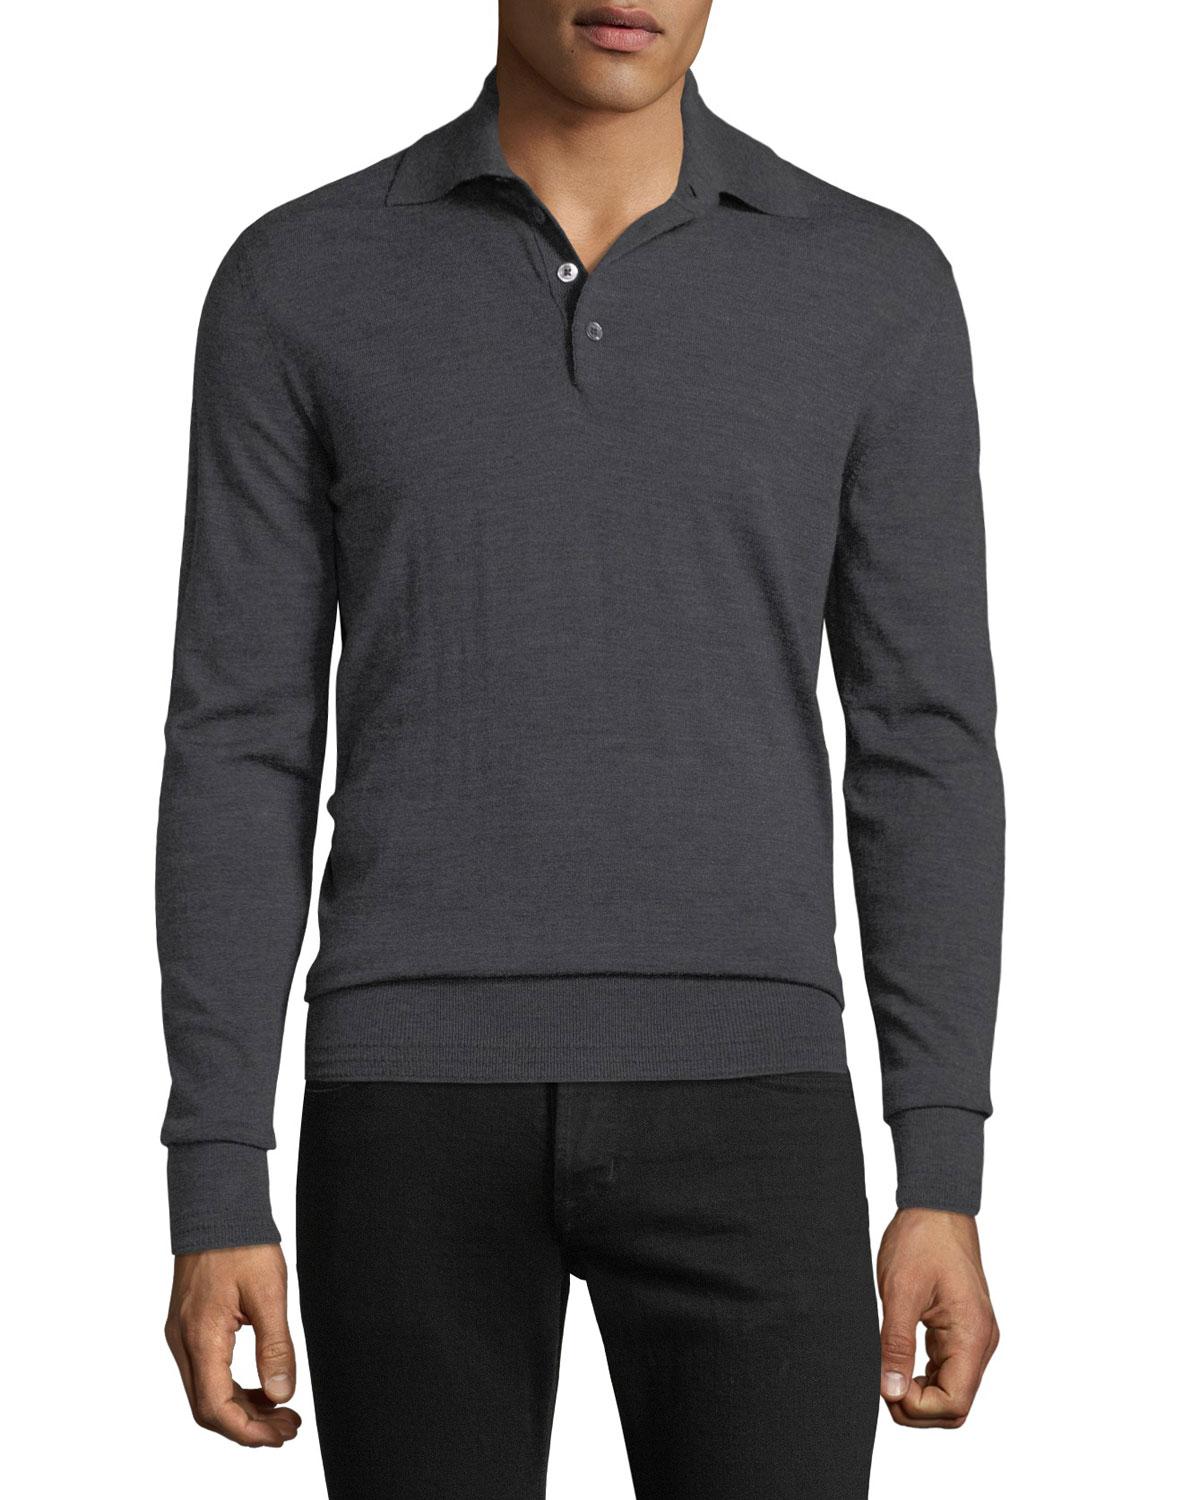 Lyst - Tom Ford Men's Long-sleeve Merino Wool Polo Shirt in Gray for Men